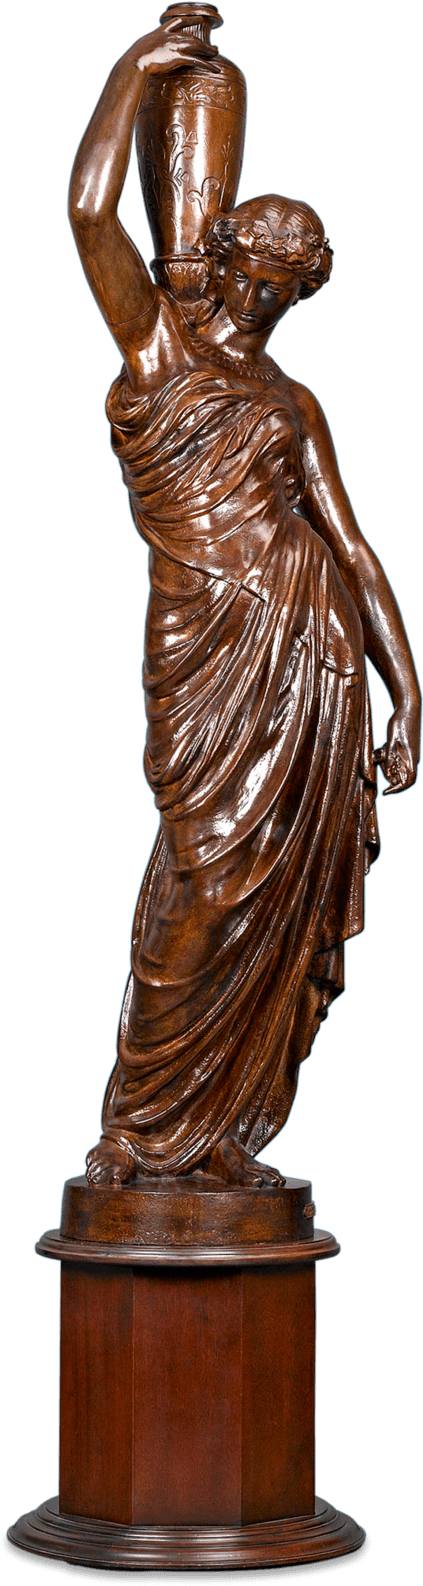 James Brown Statue Png - Bronze Sculpture (1750x1750)